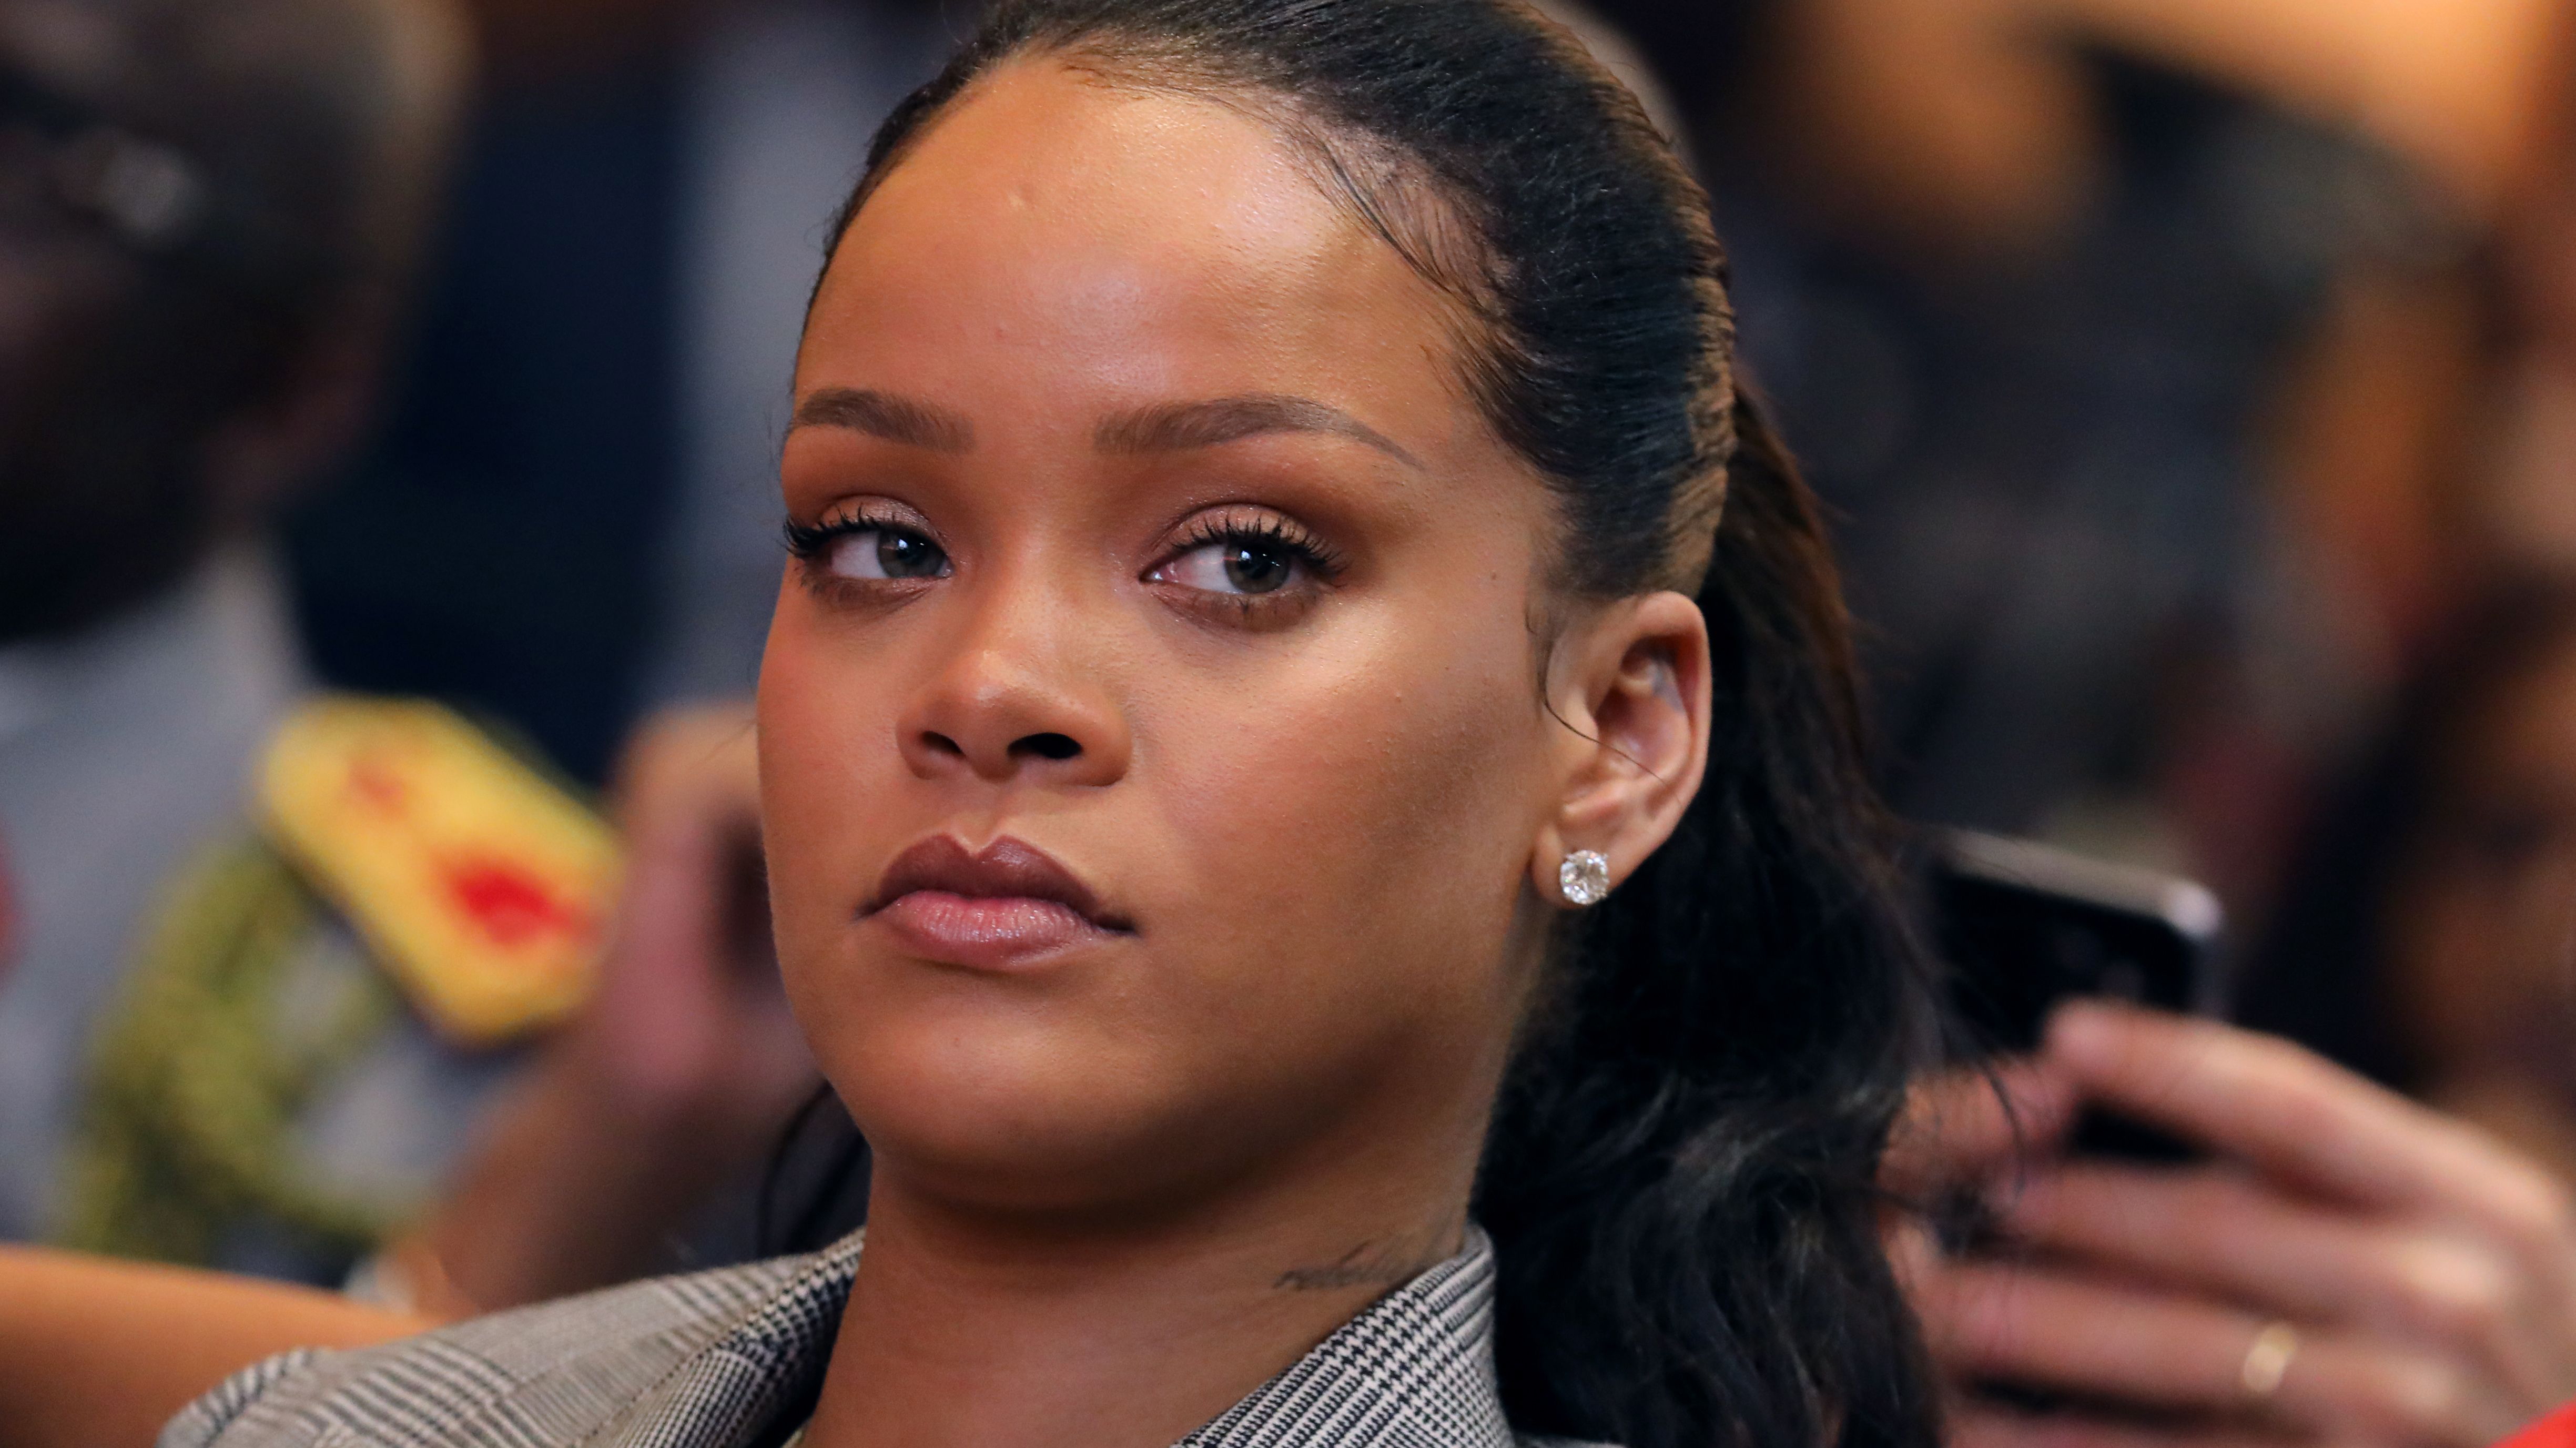 "¿Cachetear a Rihanna o golpear a Chris Brown?": El ofensivo anuncio por el que una app tuvo que disculparse